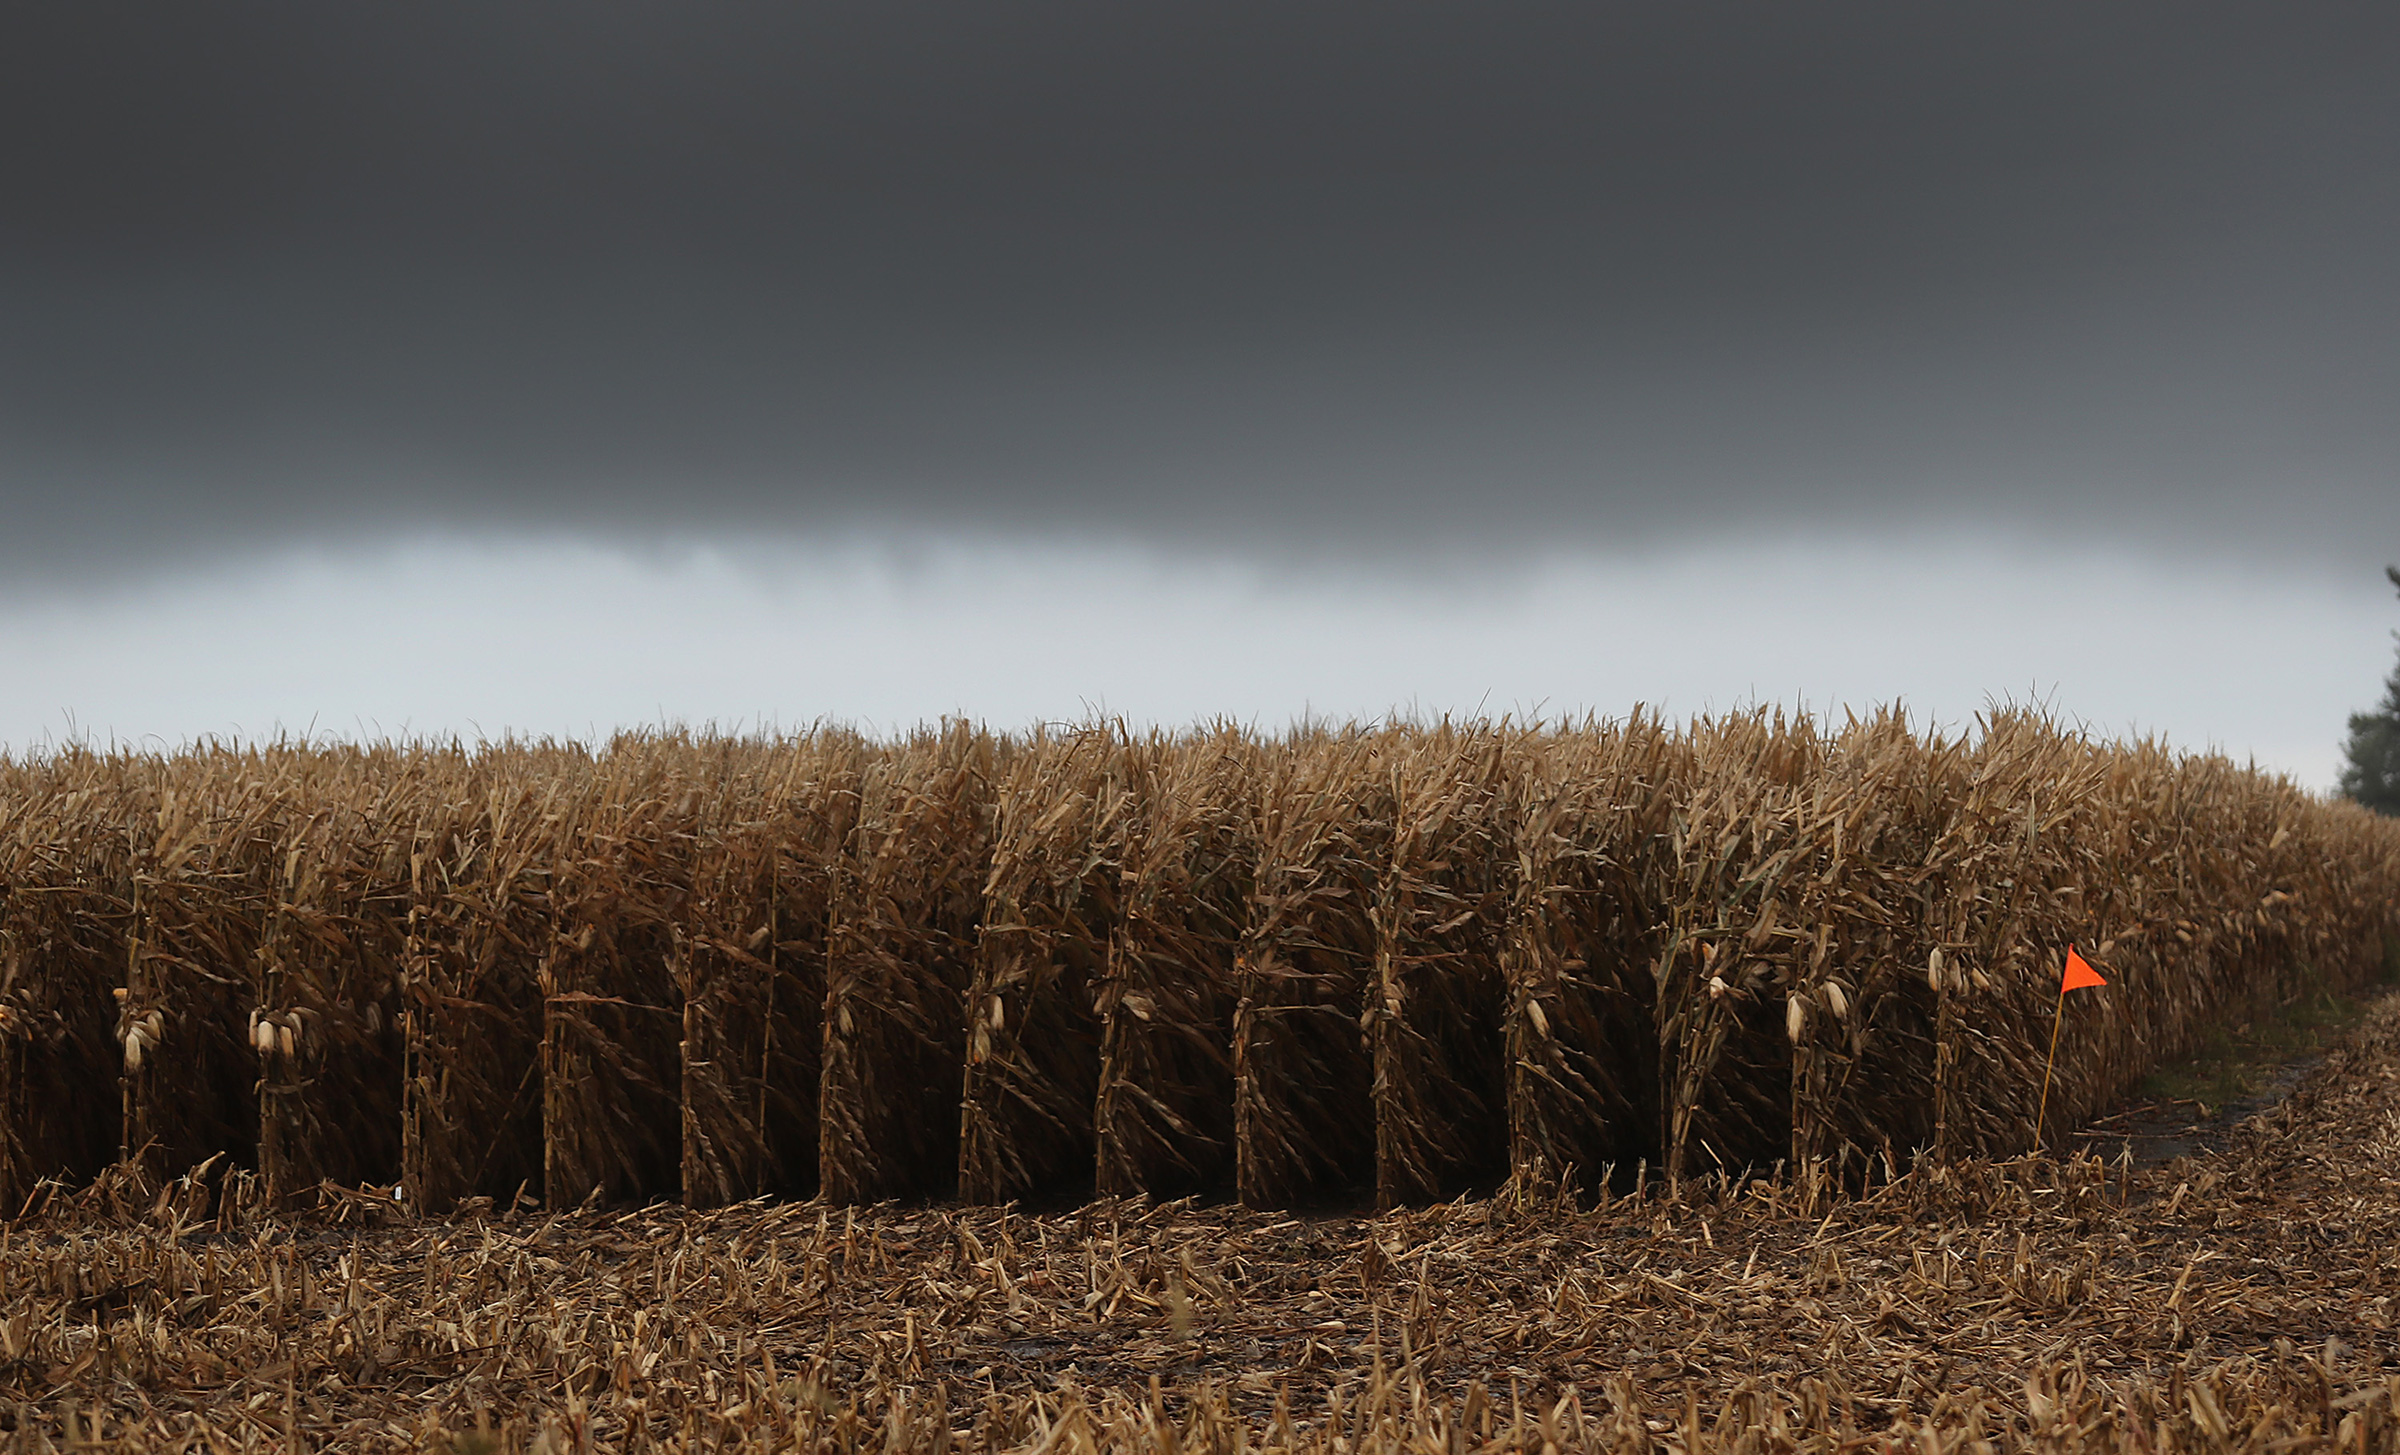 A corn field in Winterset, Iowa, on Oct. 10, 2019. (Joe Raedle—Getty Images)